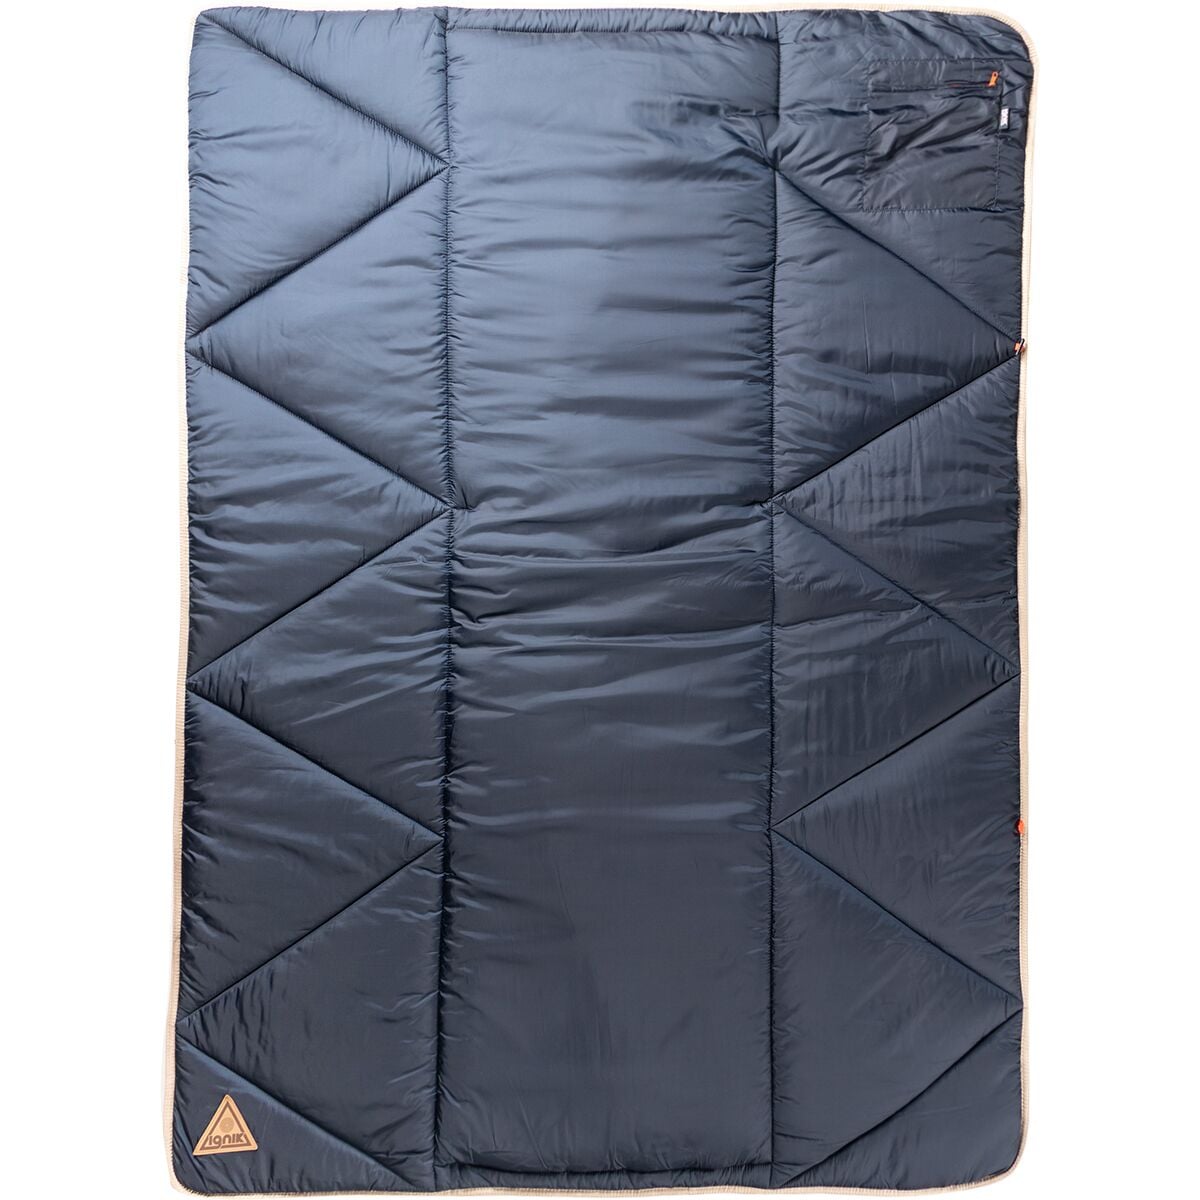 Ignik Outdoors Topside Heated Blanket